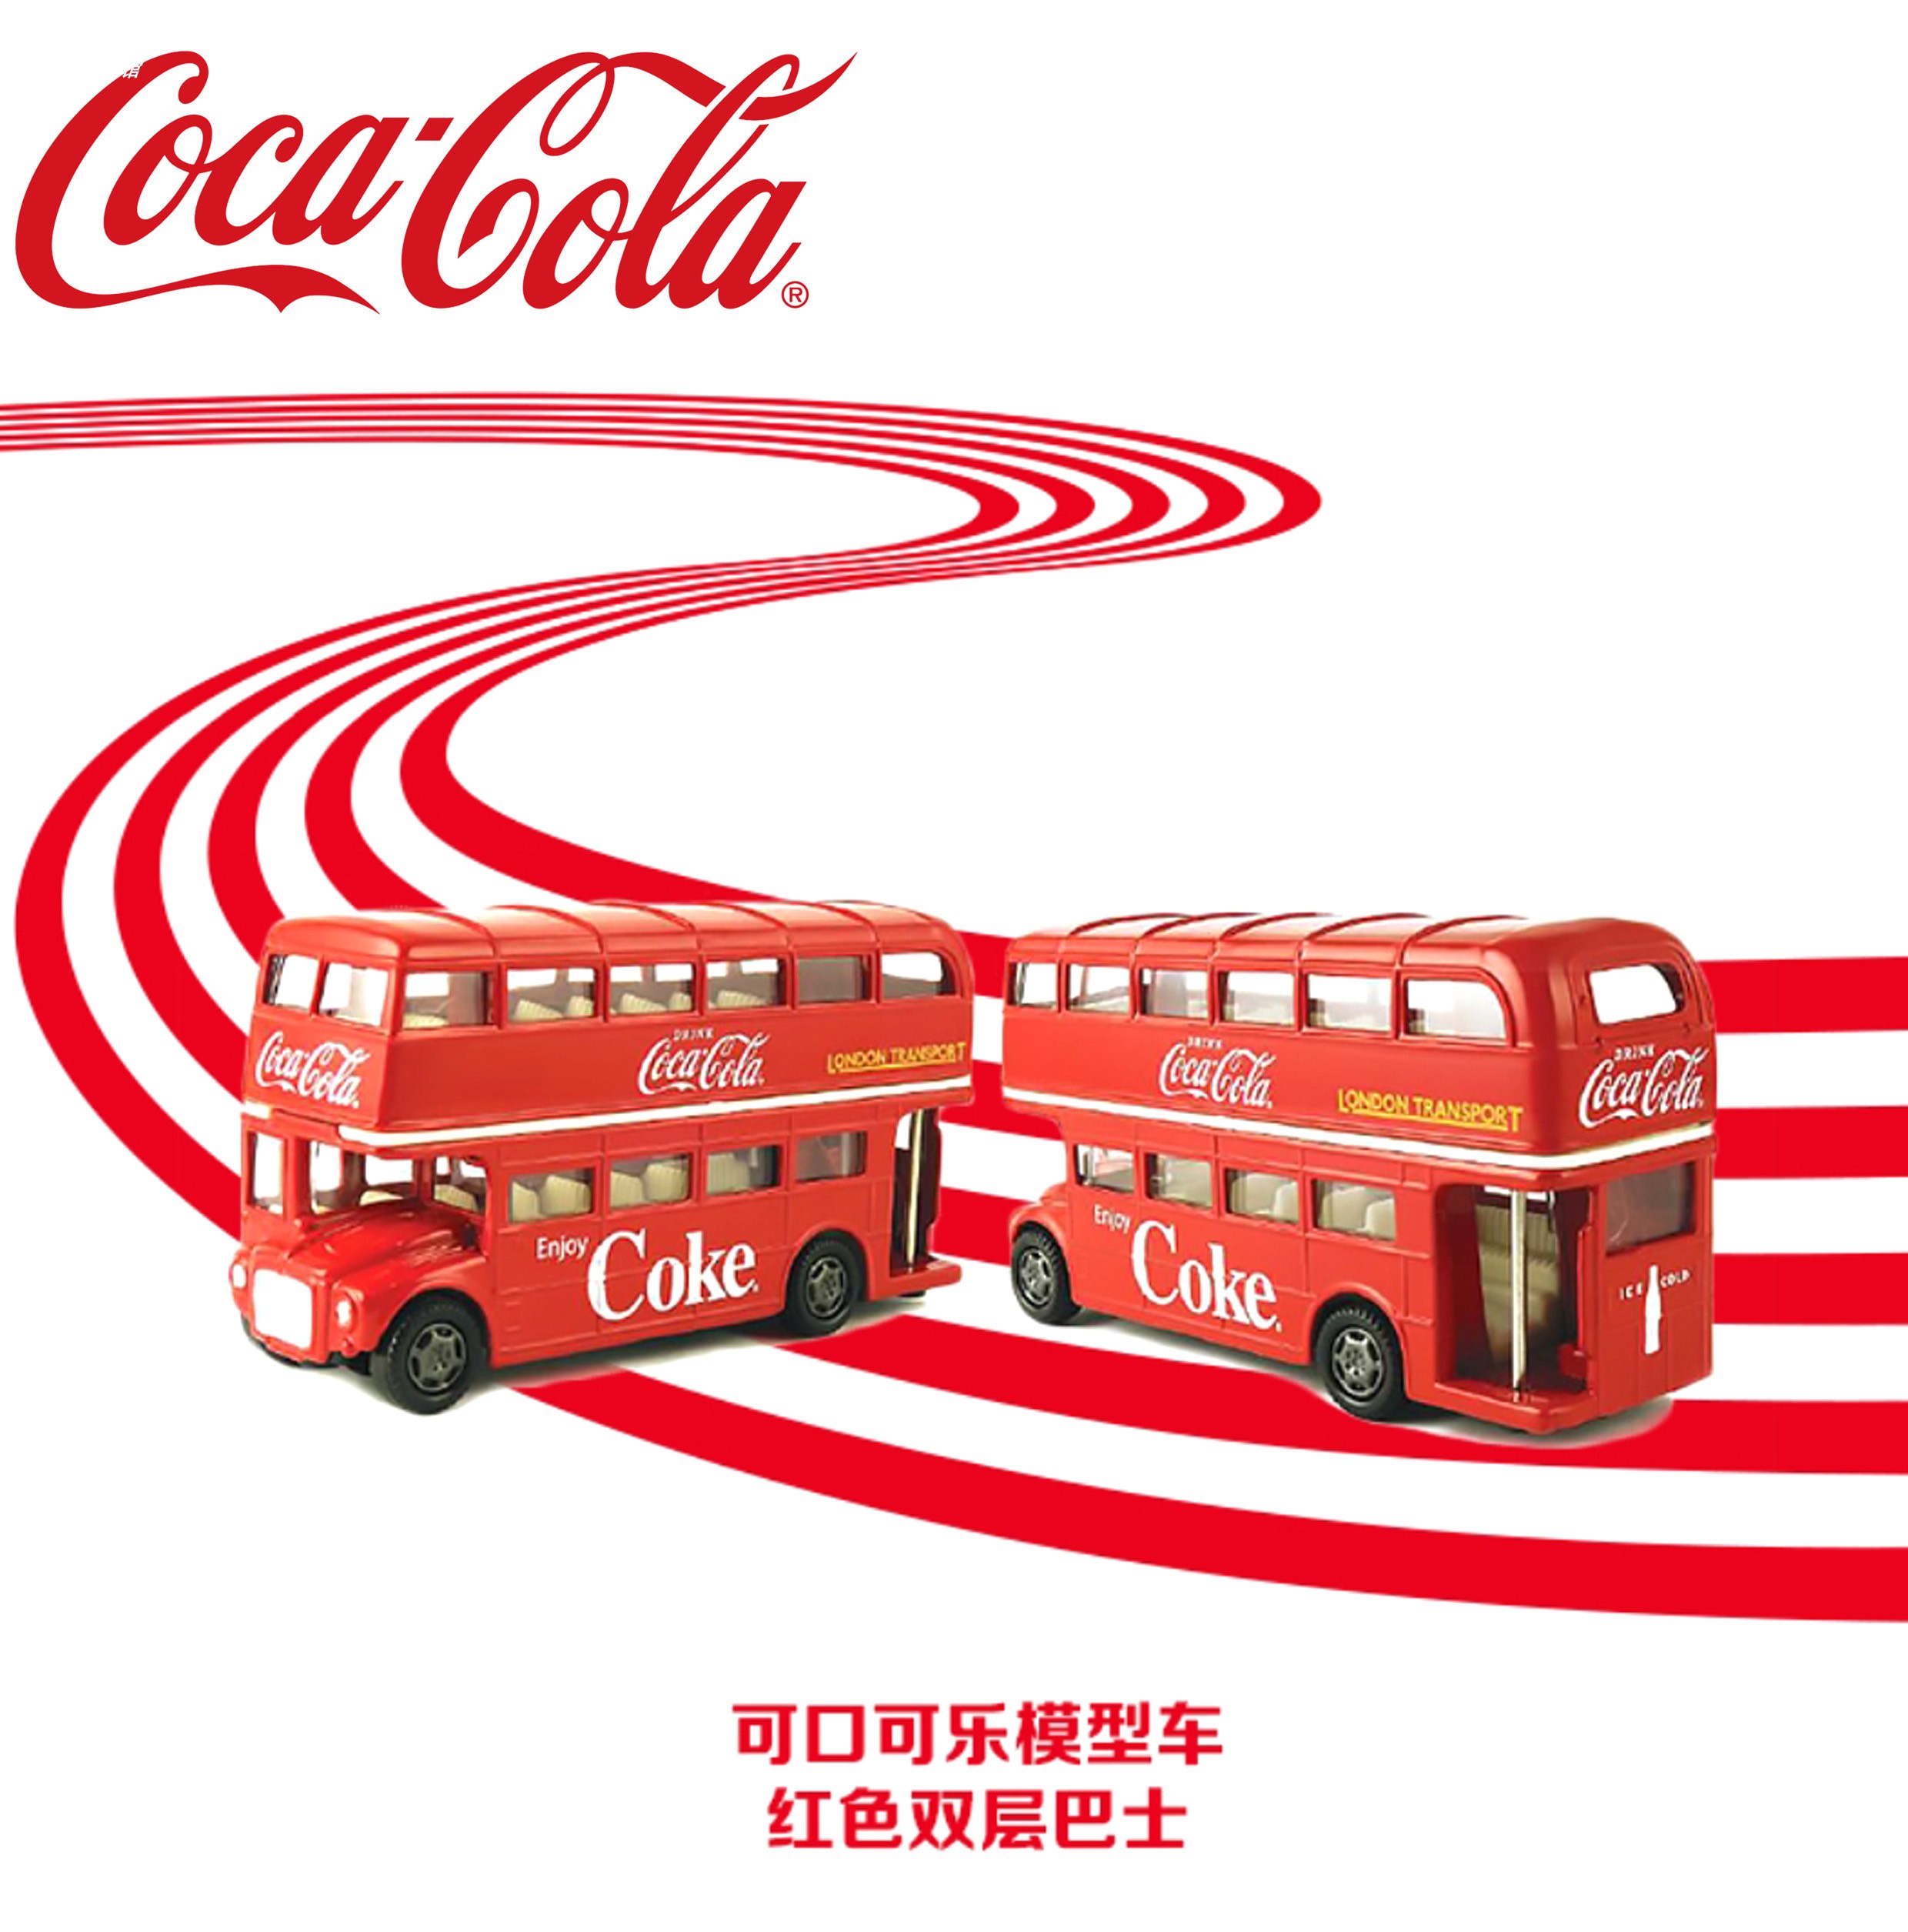 可口可乐Coca-Cola双层巴士车模金属合金玩具汽车模型限量珍藏款